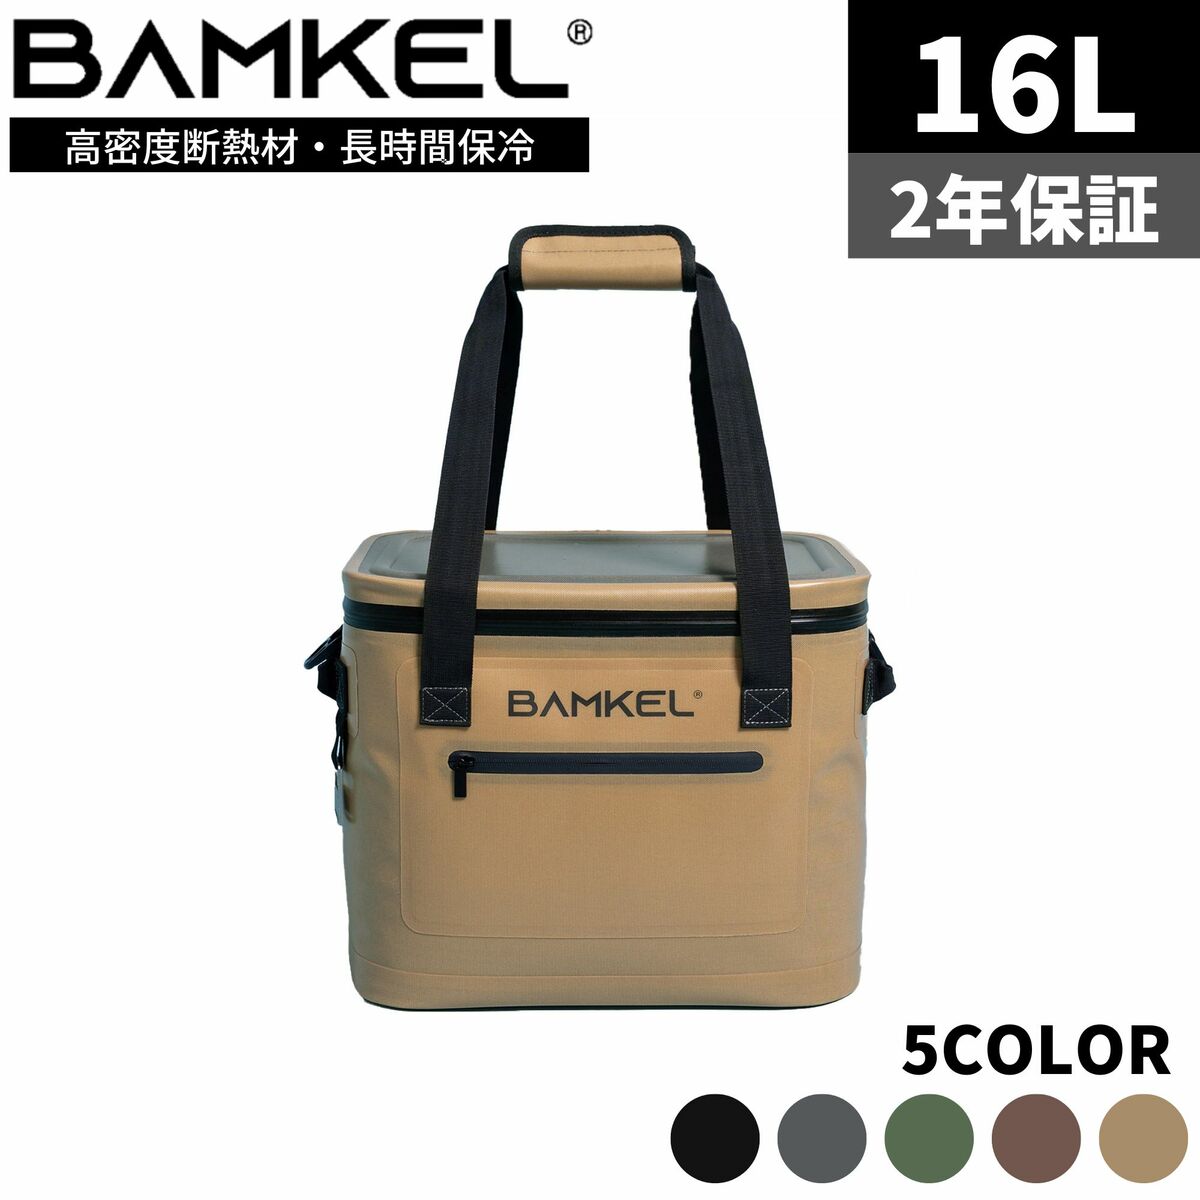 BAMKEL バンケル ソフトクーラーボックス 16L 長時間 保冷 選べるカラー サイズ 高耐久 アウトドア キャンプ 韓国ブランド ライトサンド 正規品